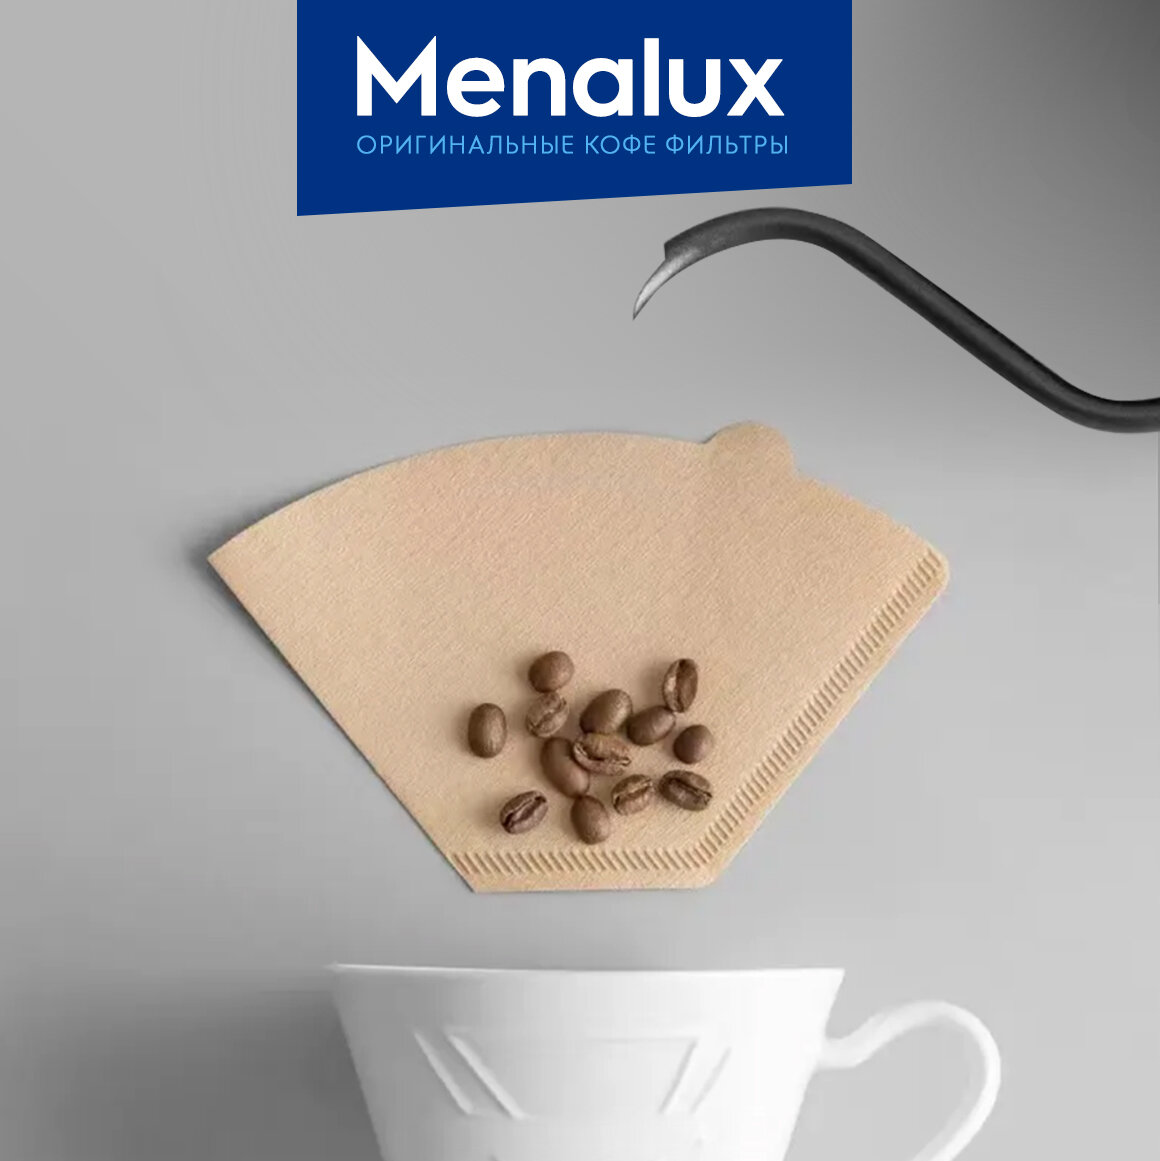 Фильтр для кофеварки Menalux - фото №6